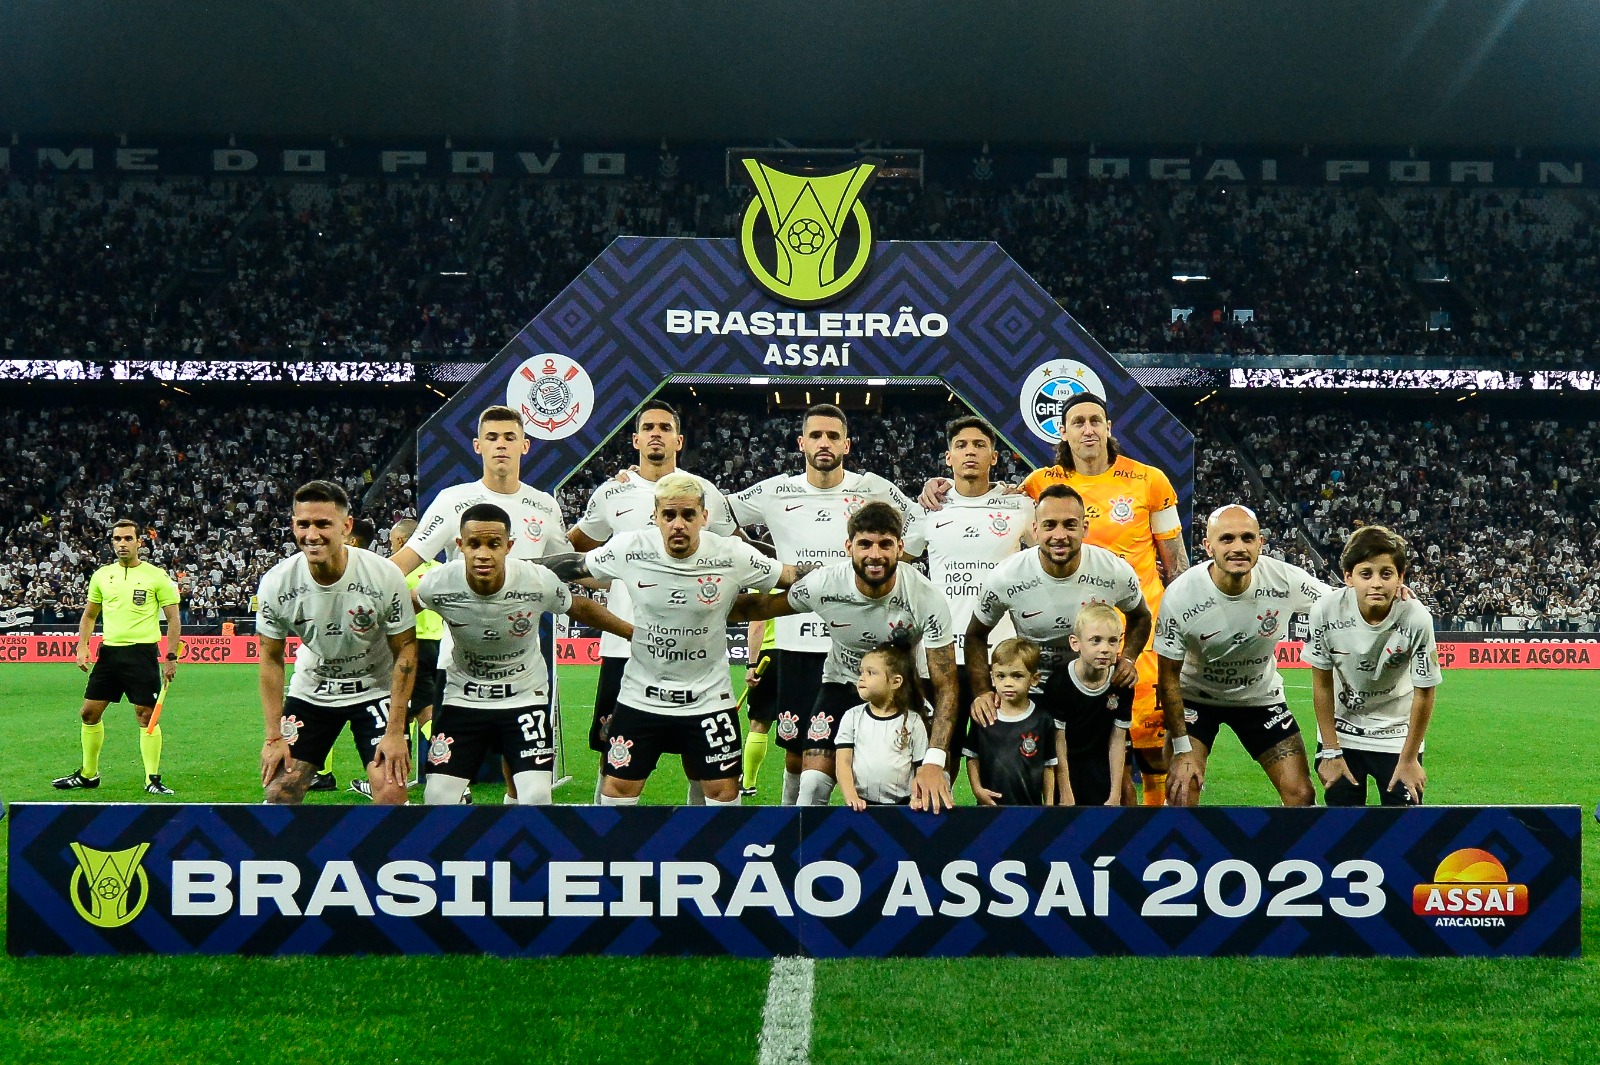 Atuações ENM: Corinthians e Grêmio empatam em bom jogo; Veja notas (Photo by Mauro Horita/Getty Images)